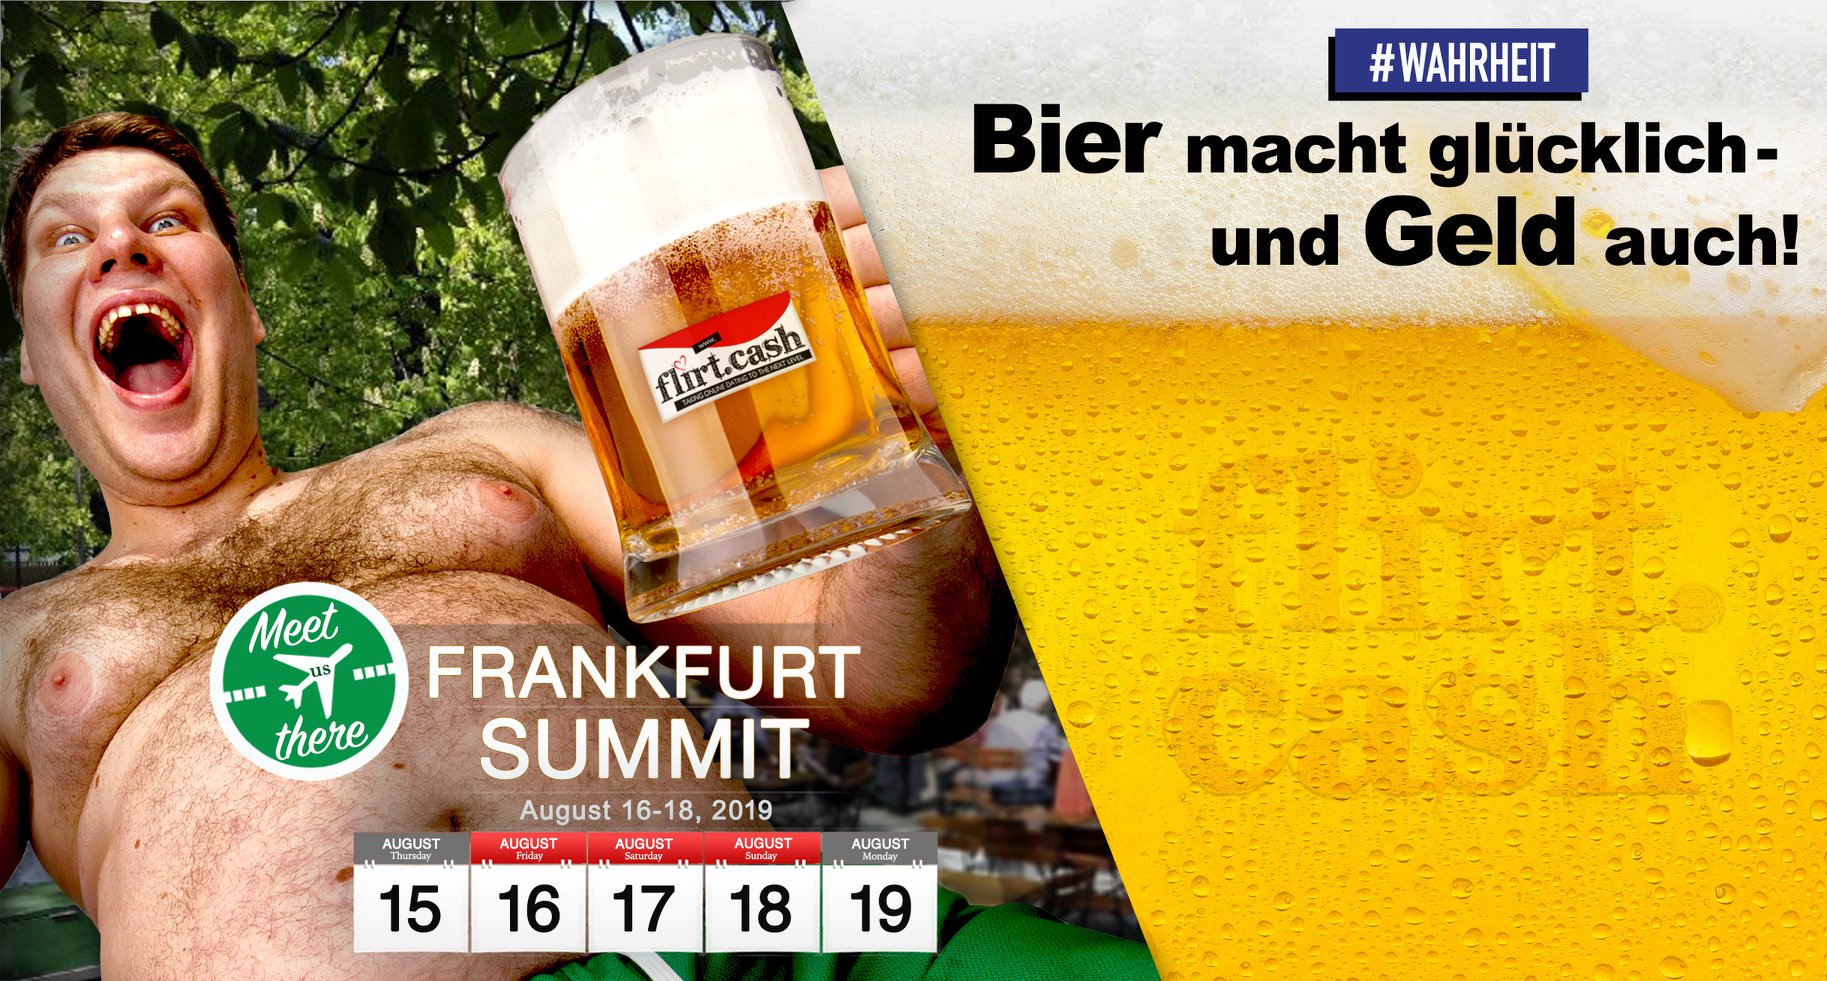 Frankfurt Summit